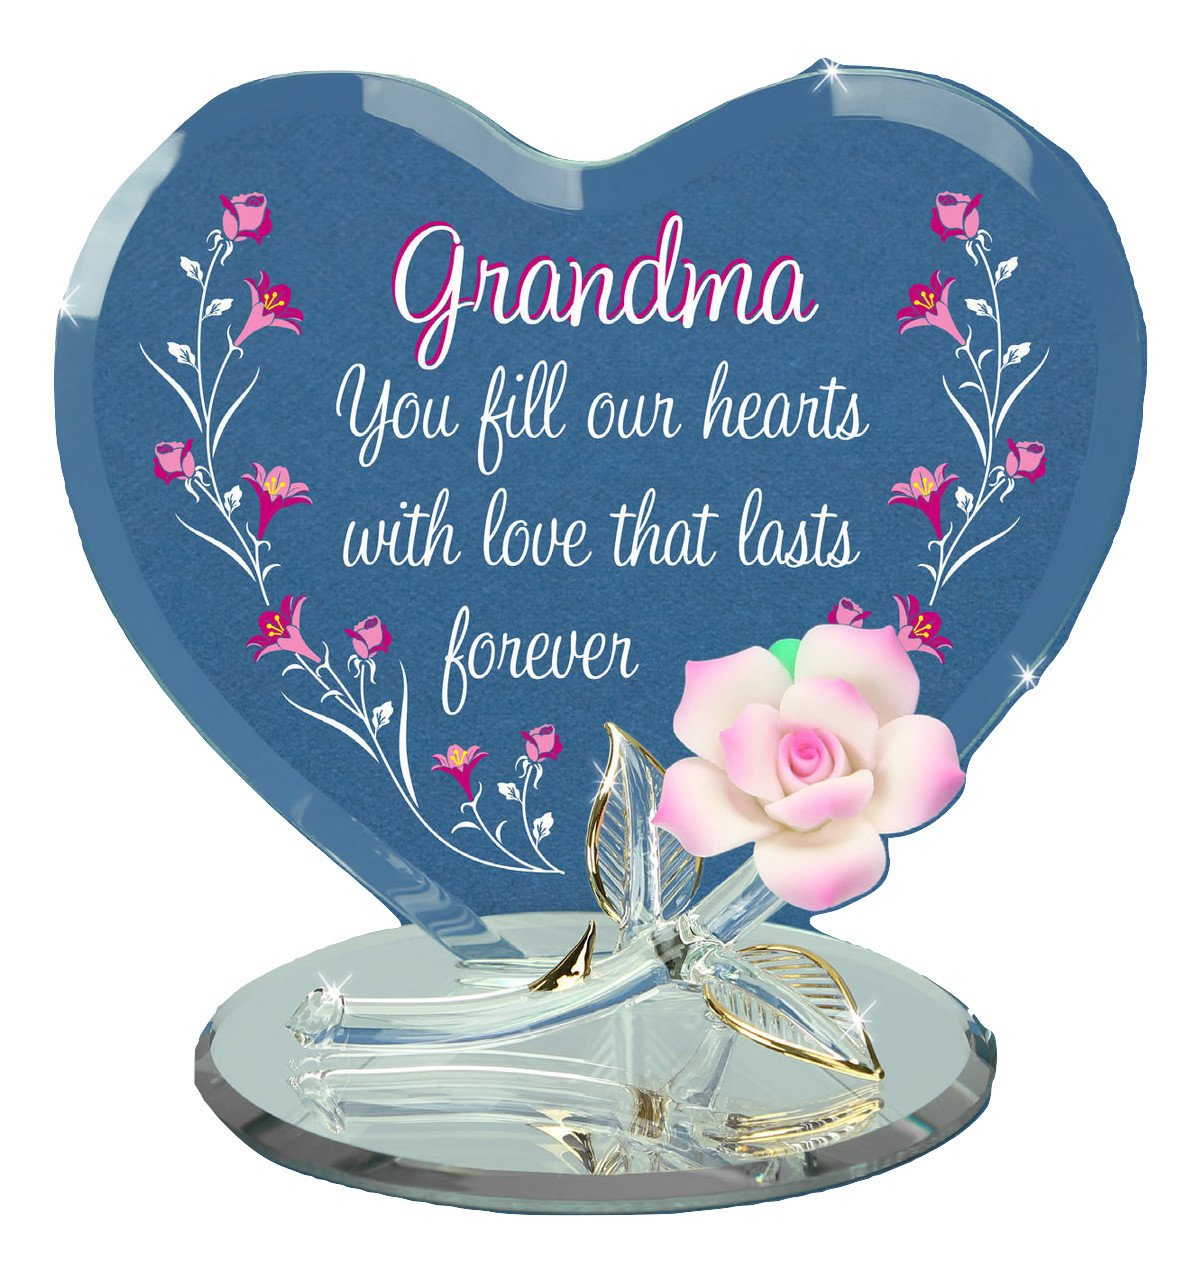 Grandma Porcelain Rose, Handmade Heart Figurine, Grandma Flower Gift, Mother's Day Gift, Home Decor, Gift From Grandkids